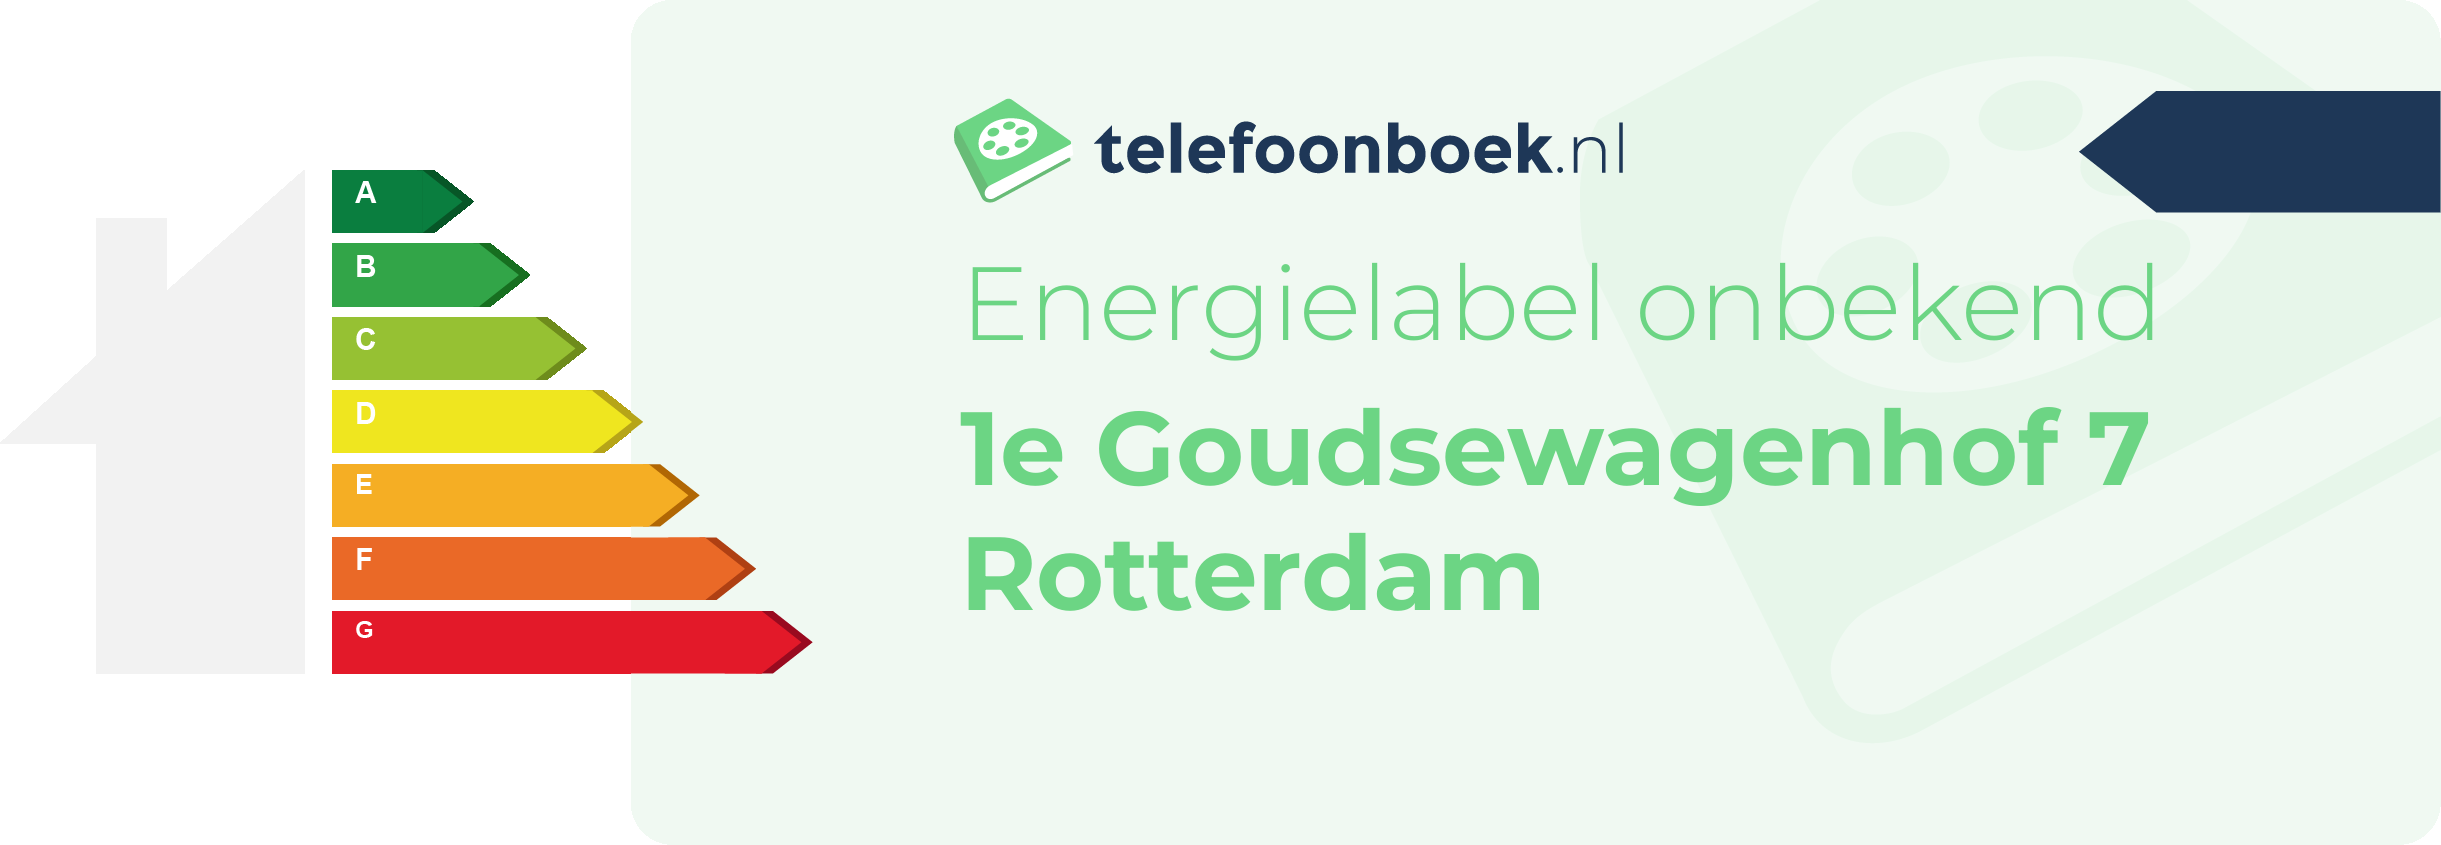 Energielabel 1e Goudsewagenhof 7 Rotterdam